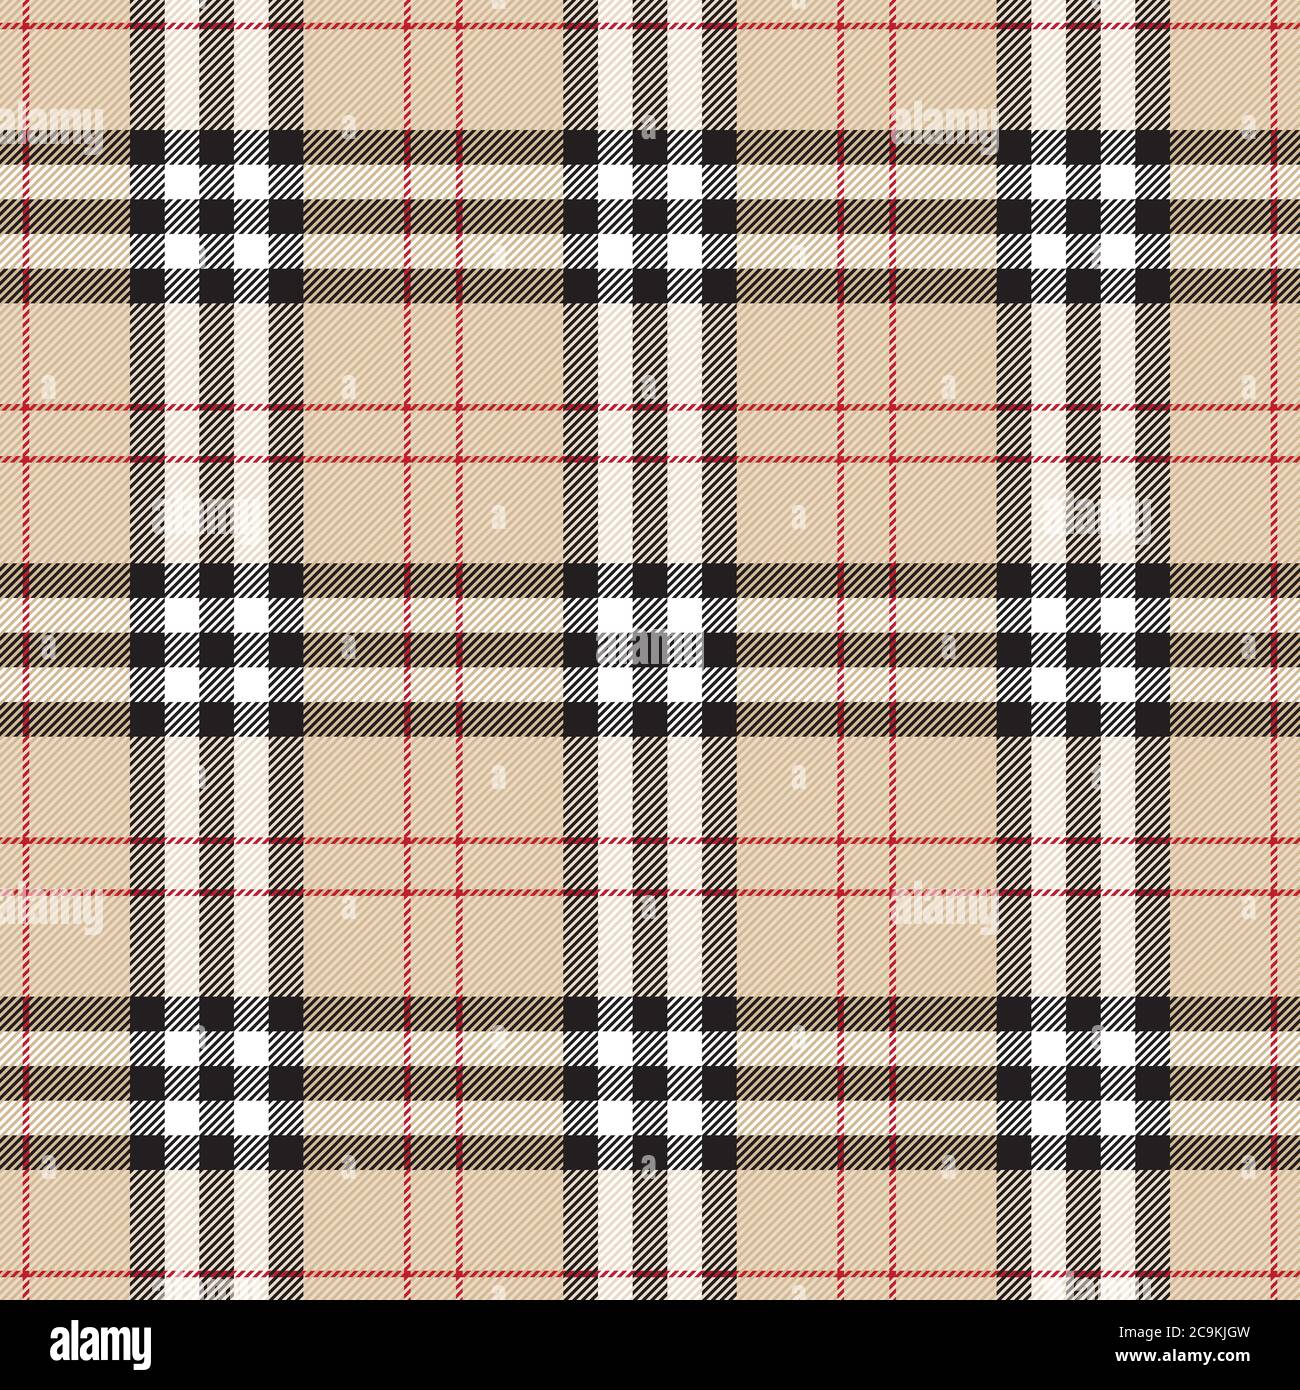 Motivo scozzese vintage senza cuciture. Tradizionale ornamento scozzese in plaid a scacchi. Illustrazione vettoriale a strisce con intersezione geometrica colorata. Illustrazione Vettoriale